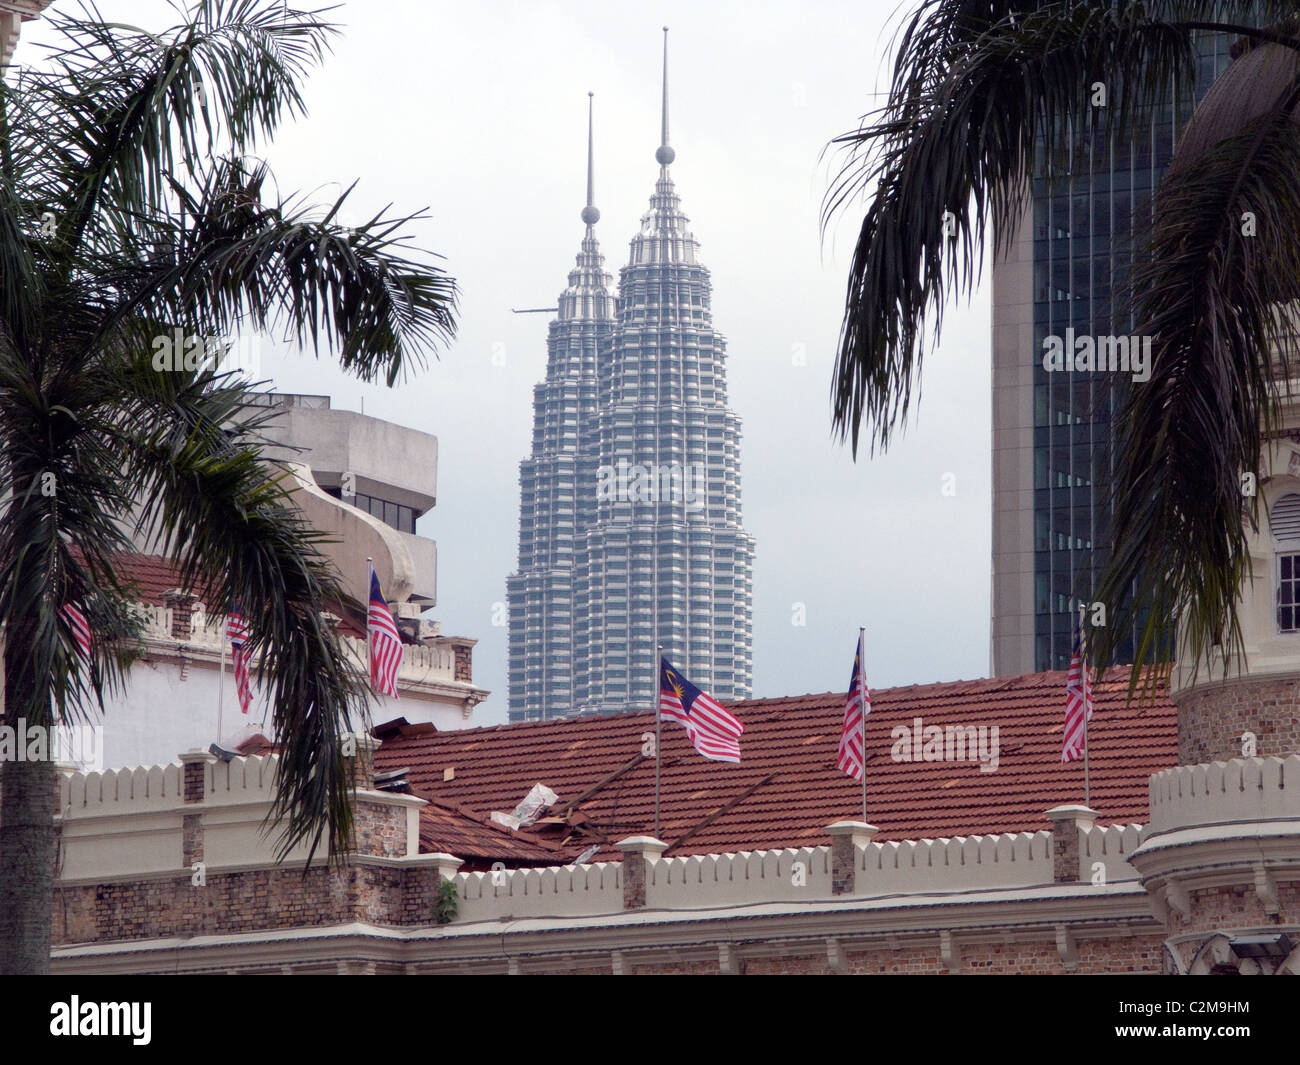 Les tours jumelles Petronas de Kuala Lumpur, Malaisie, vu à travers l'ancien Palais de justice. Banque D'Images